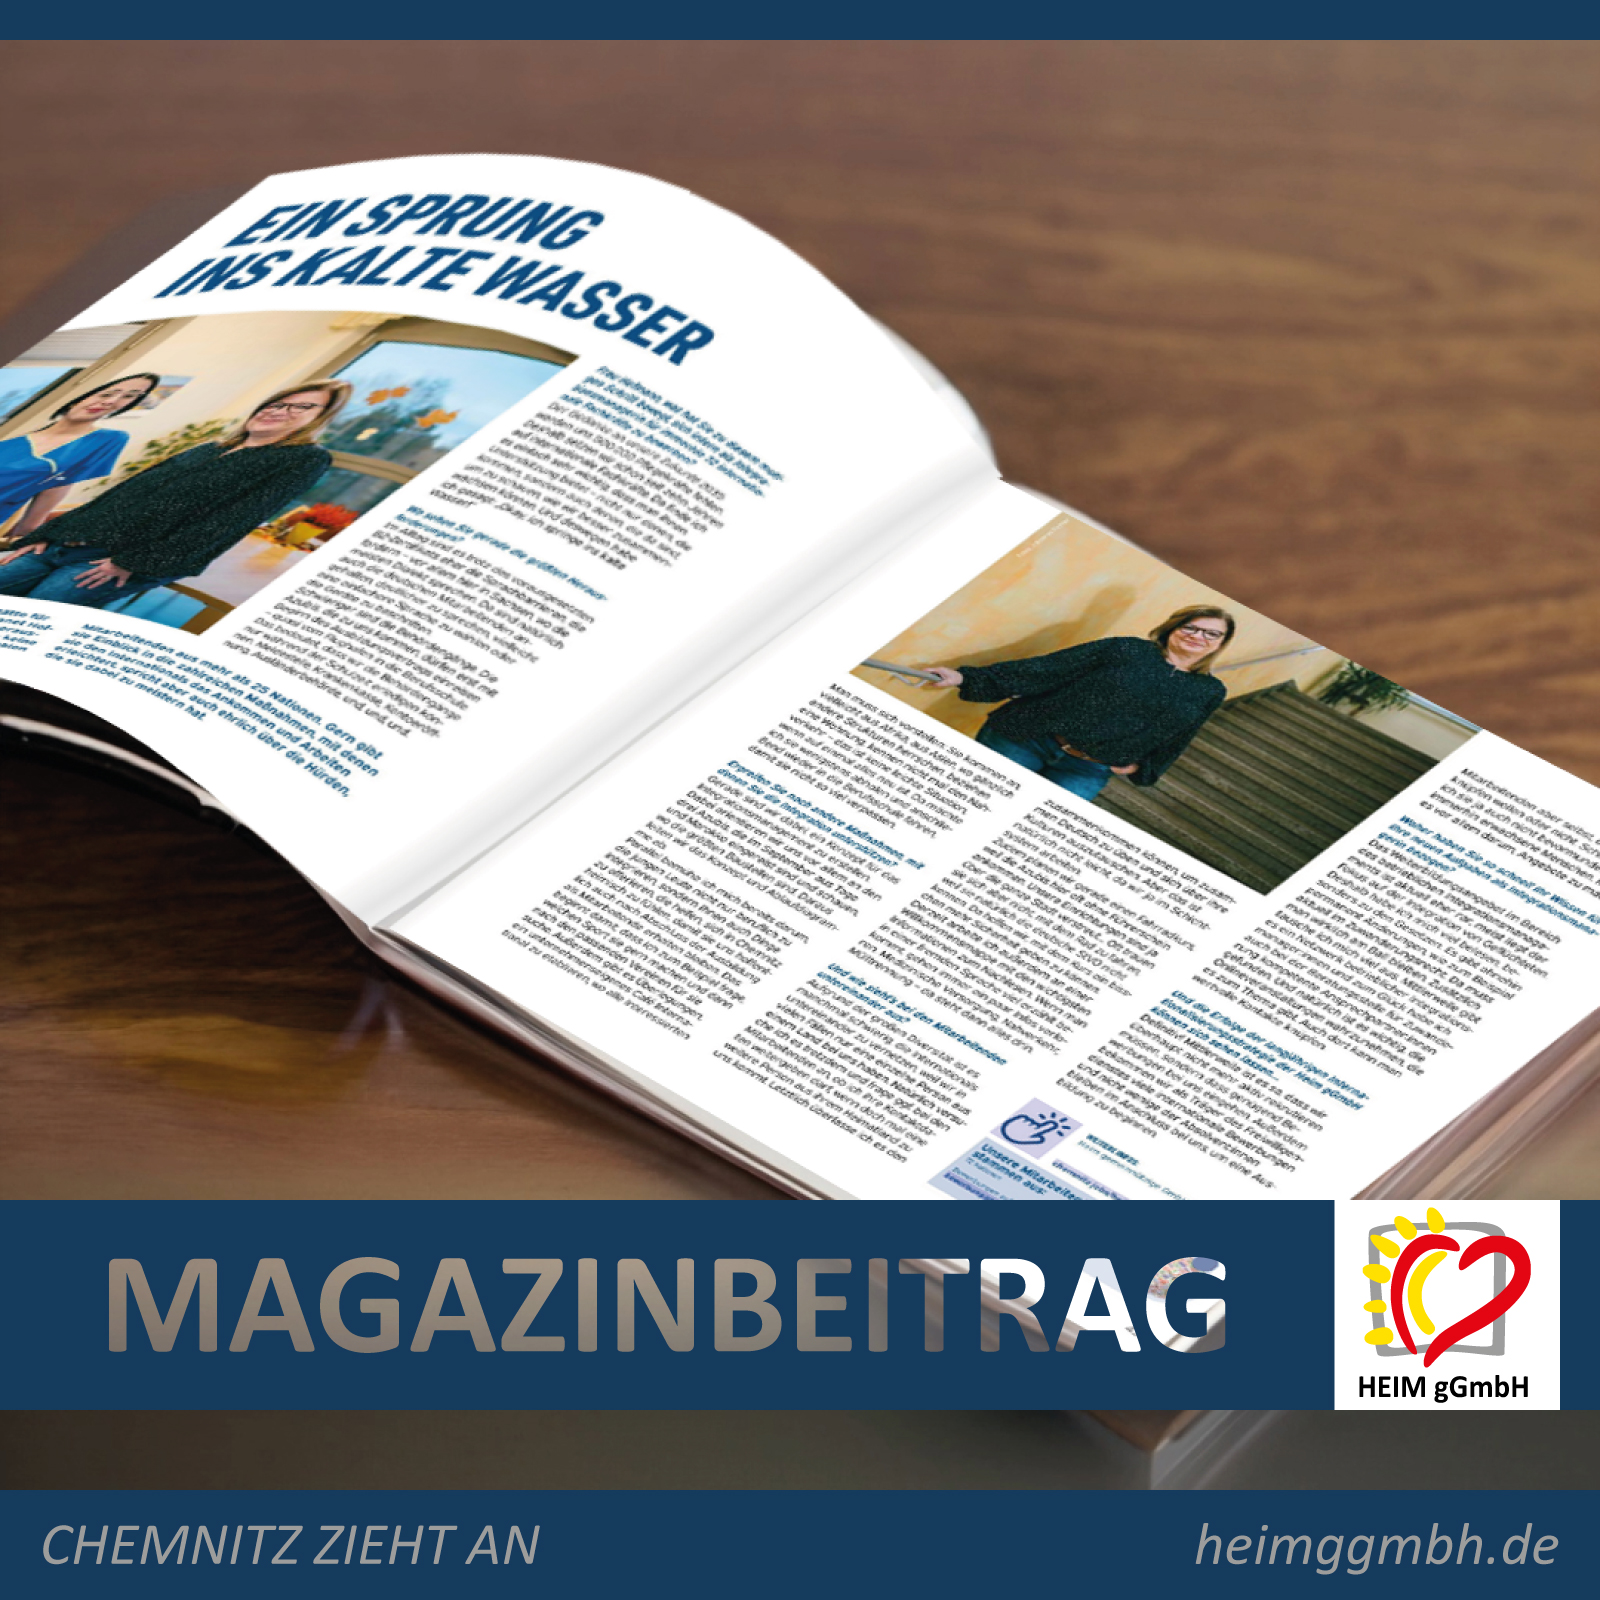 Der Integrationscoach der HEIM gemeinnützige GmbH im Interview für das Magazin von "Chemnitz zieht an" zum Thema Internationals